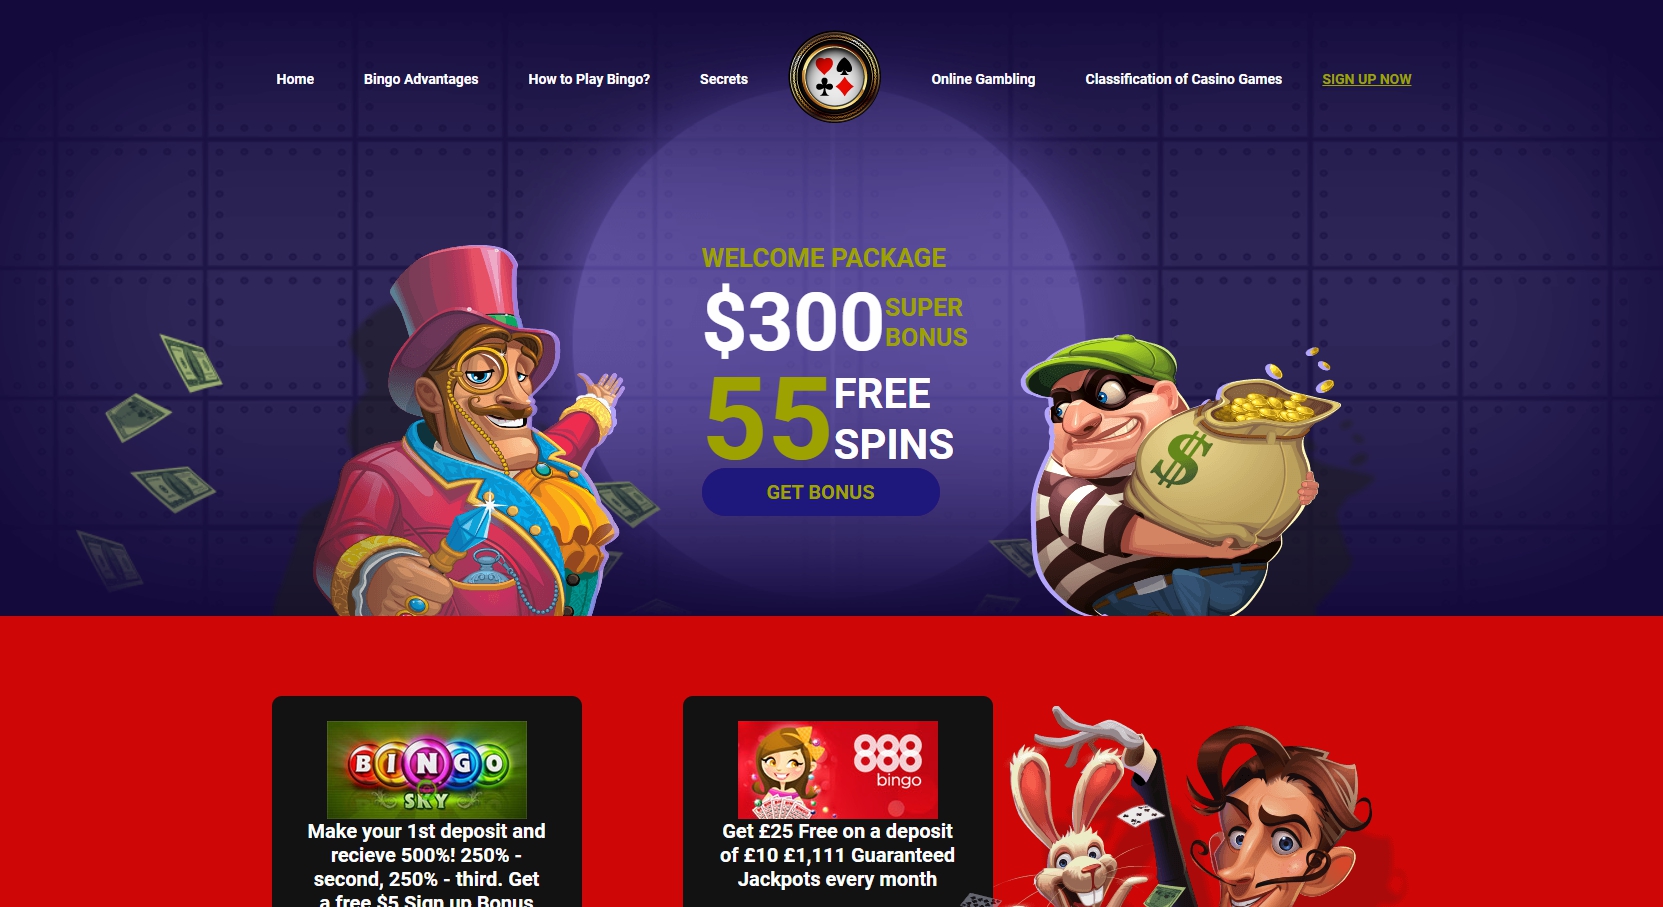 Bingo Online Casino Review